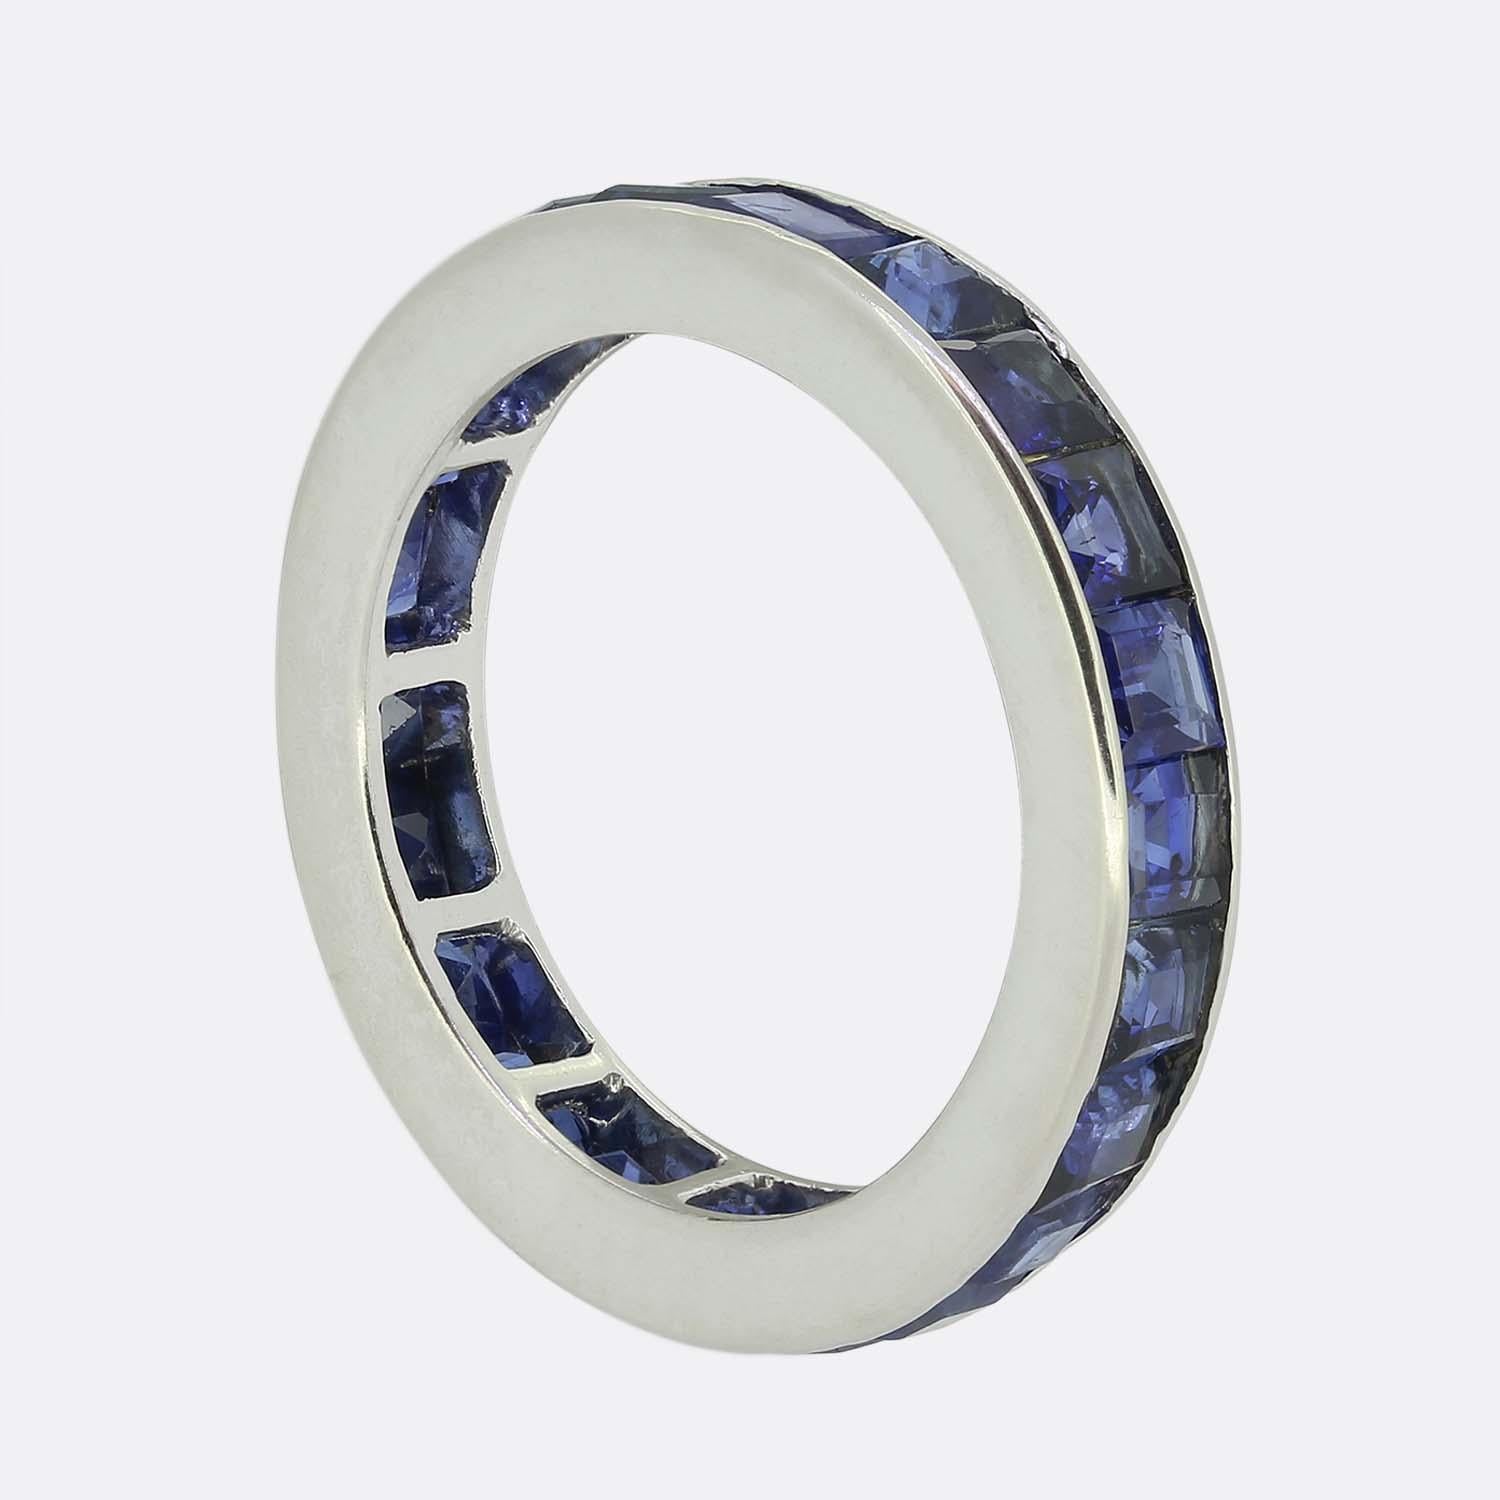 Dieser wunderbare Ring stammt aus einer Zeit, in der der Art-Déco-Stil die Welt des Designs revolutionierte. Dieses Schmuckstück wurde aus Platin gefertigt, und das Band beherbergt 22 perfekt aufeinander abgestimmte, quadratische, kalibrierte